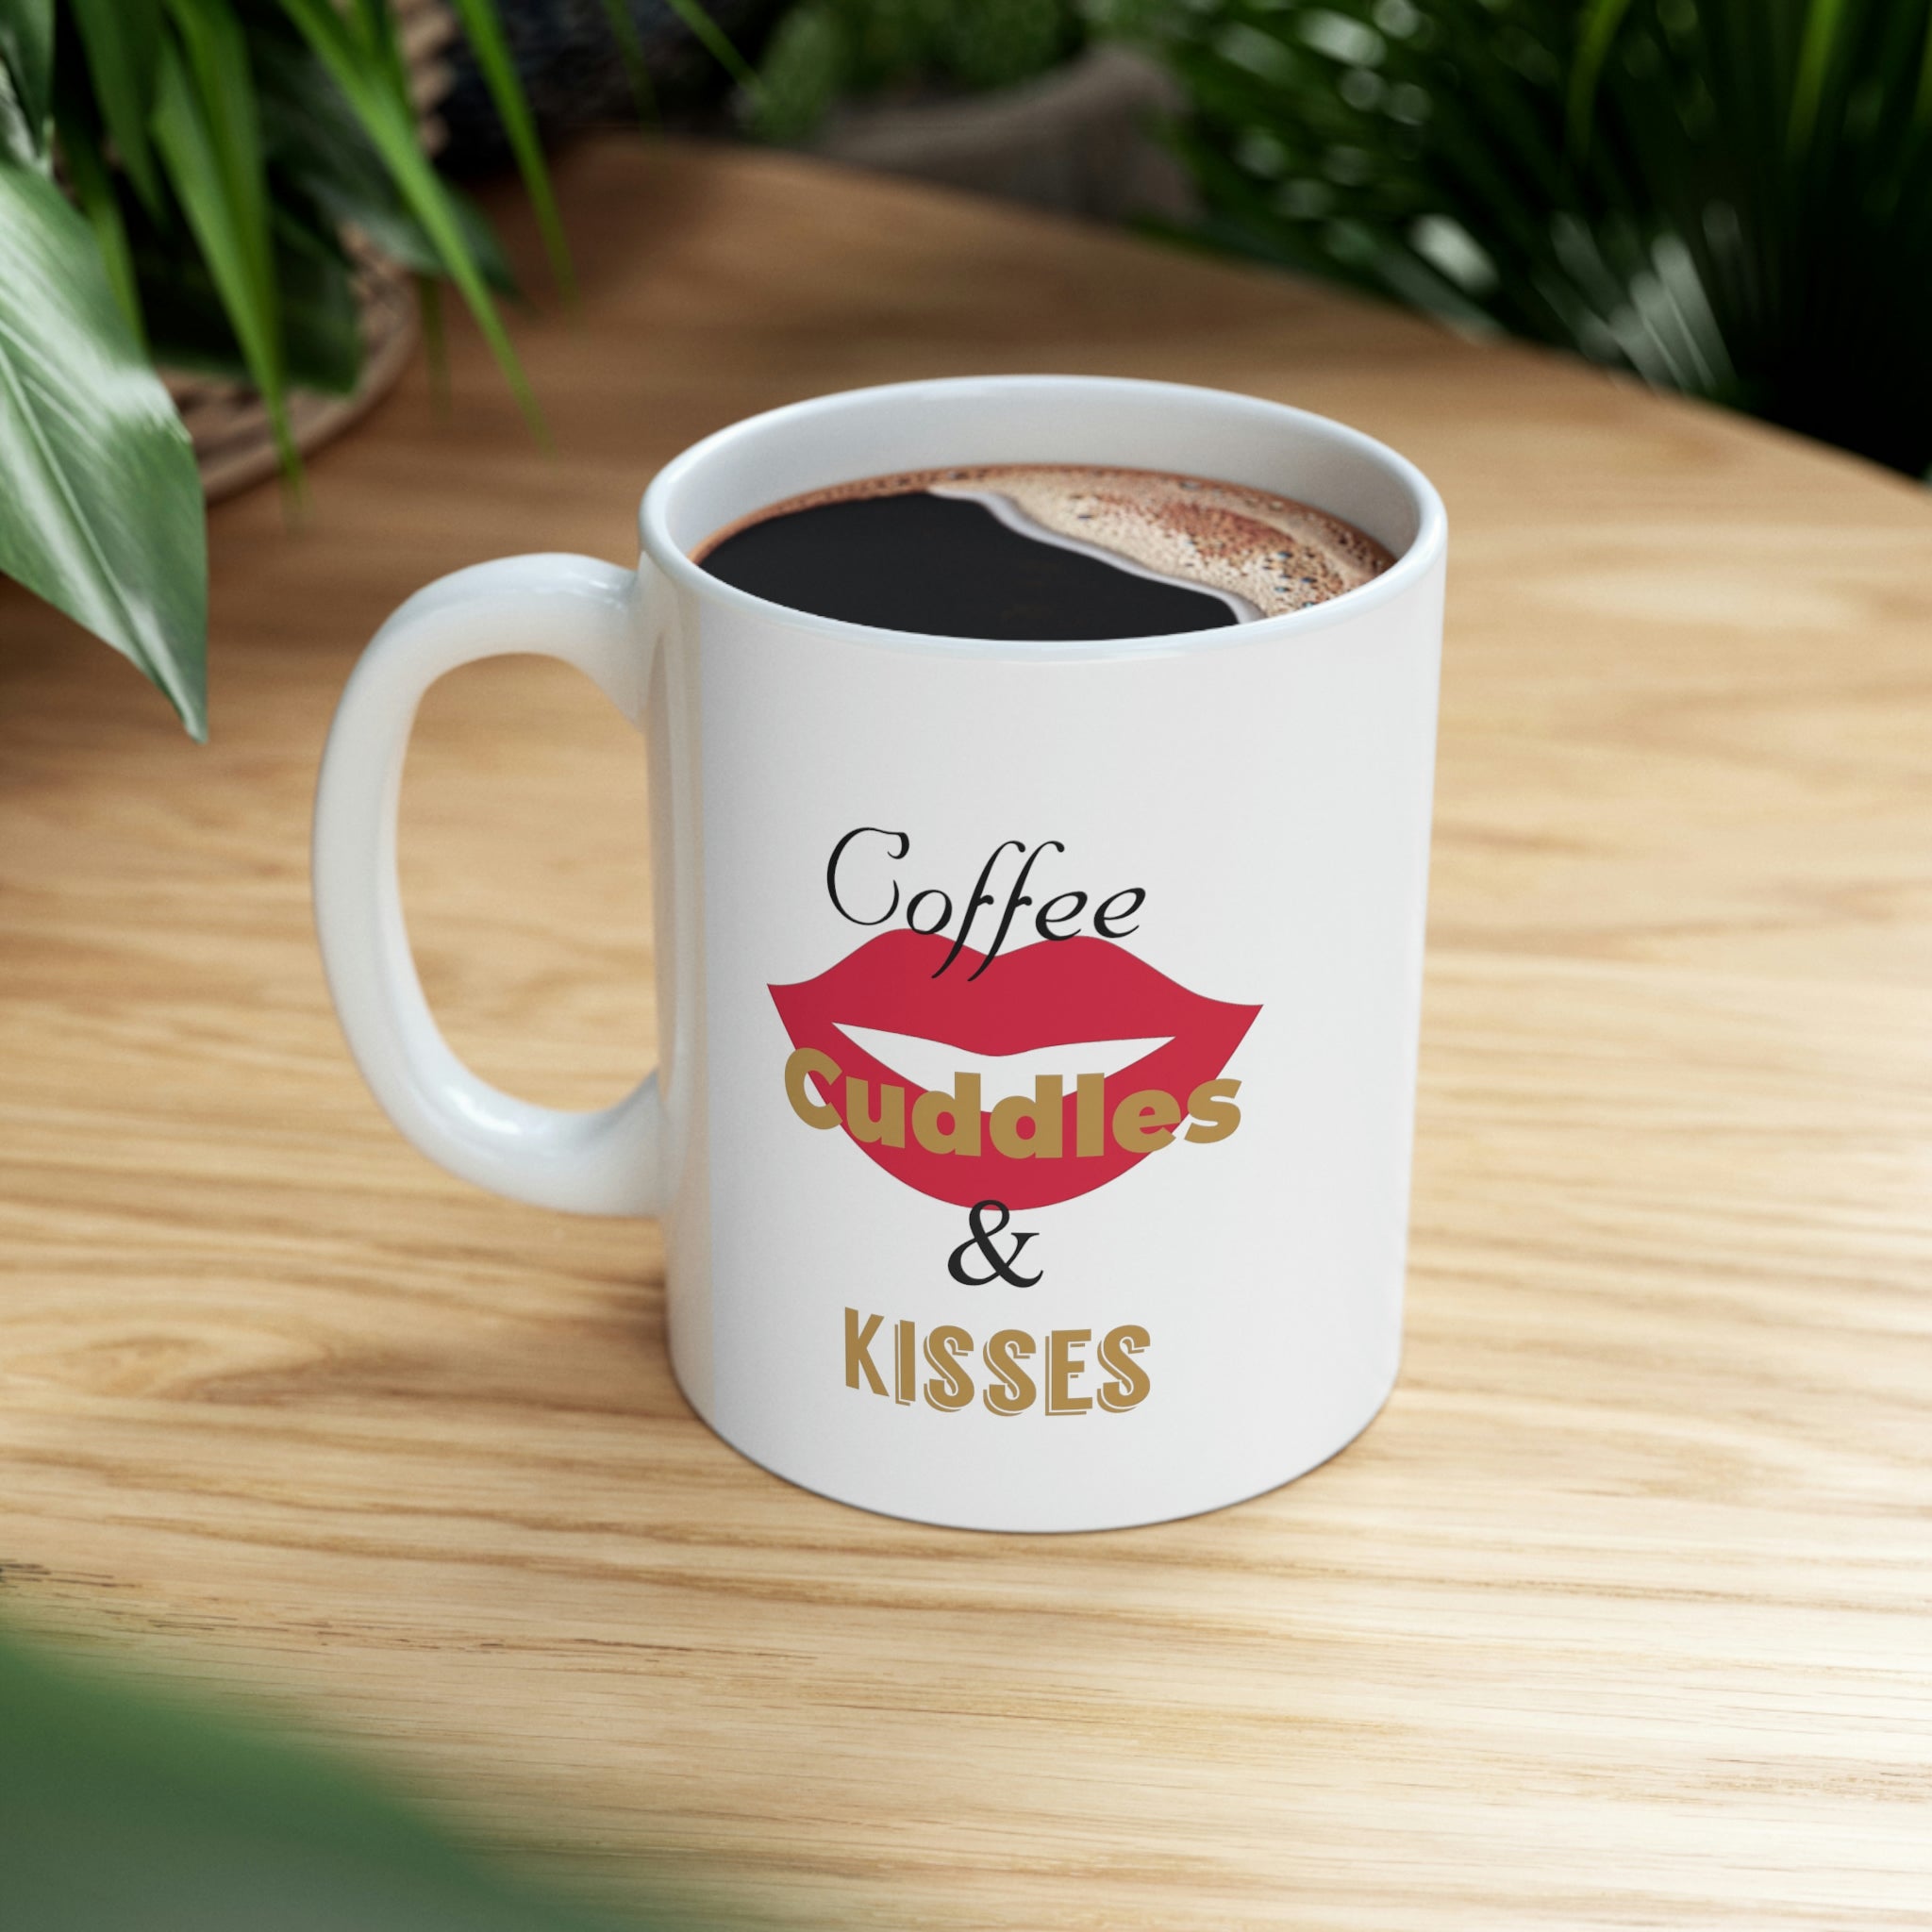 Coffee Cuddles & Kisses Ceramic Mug 11oz